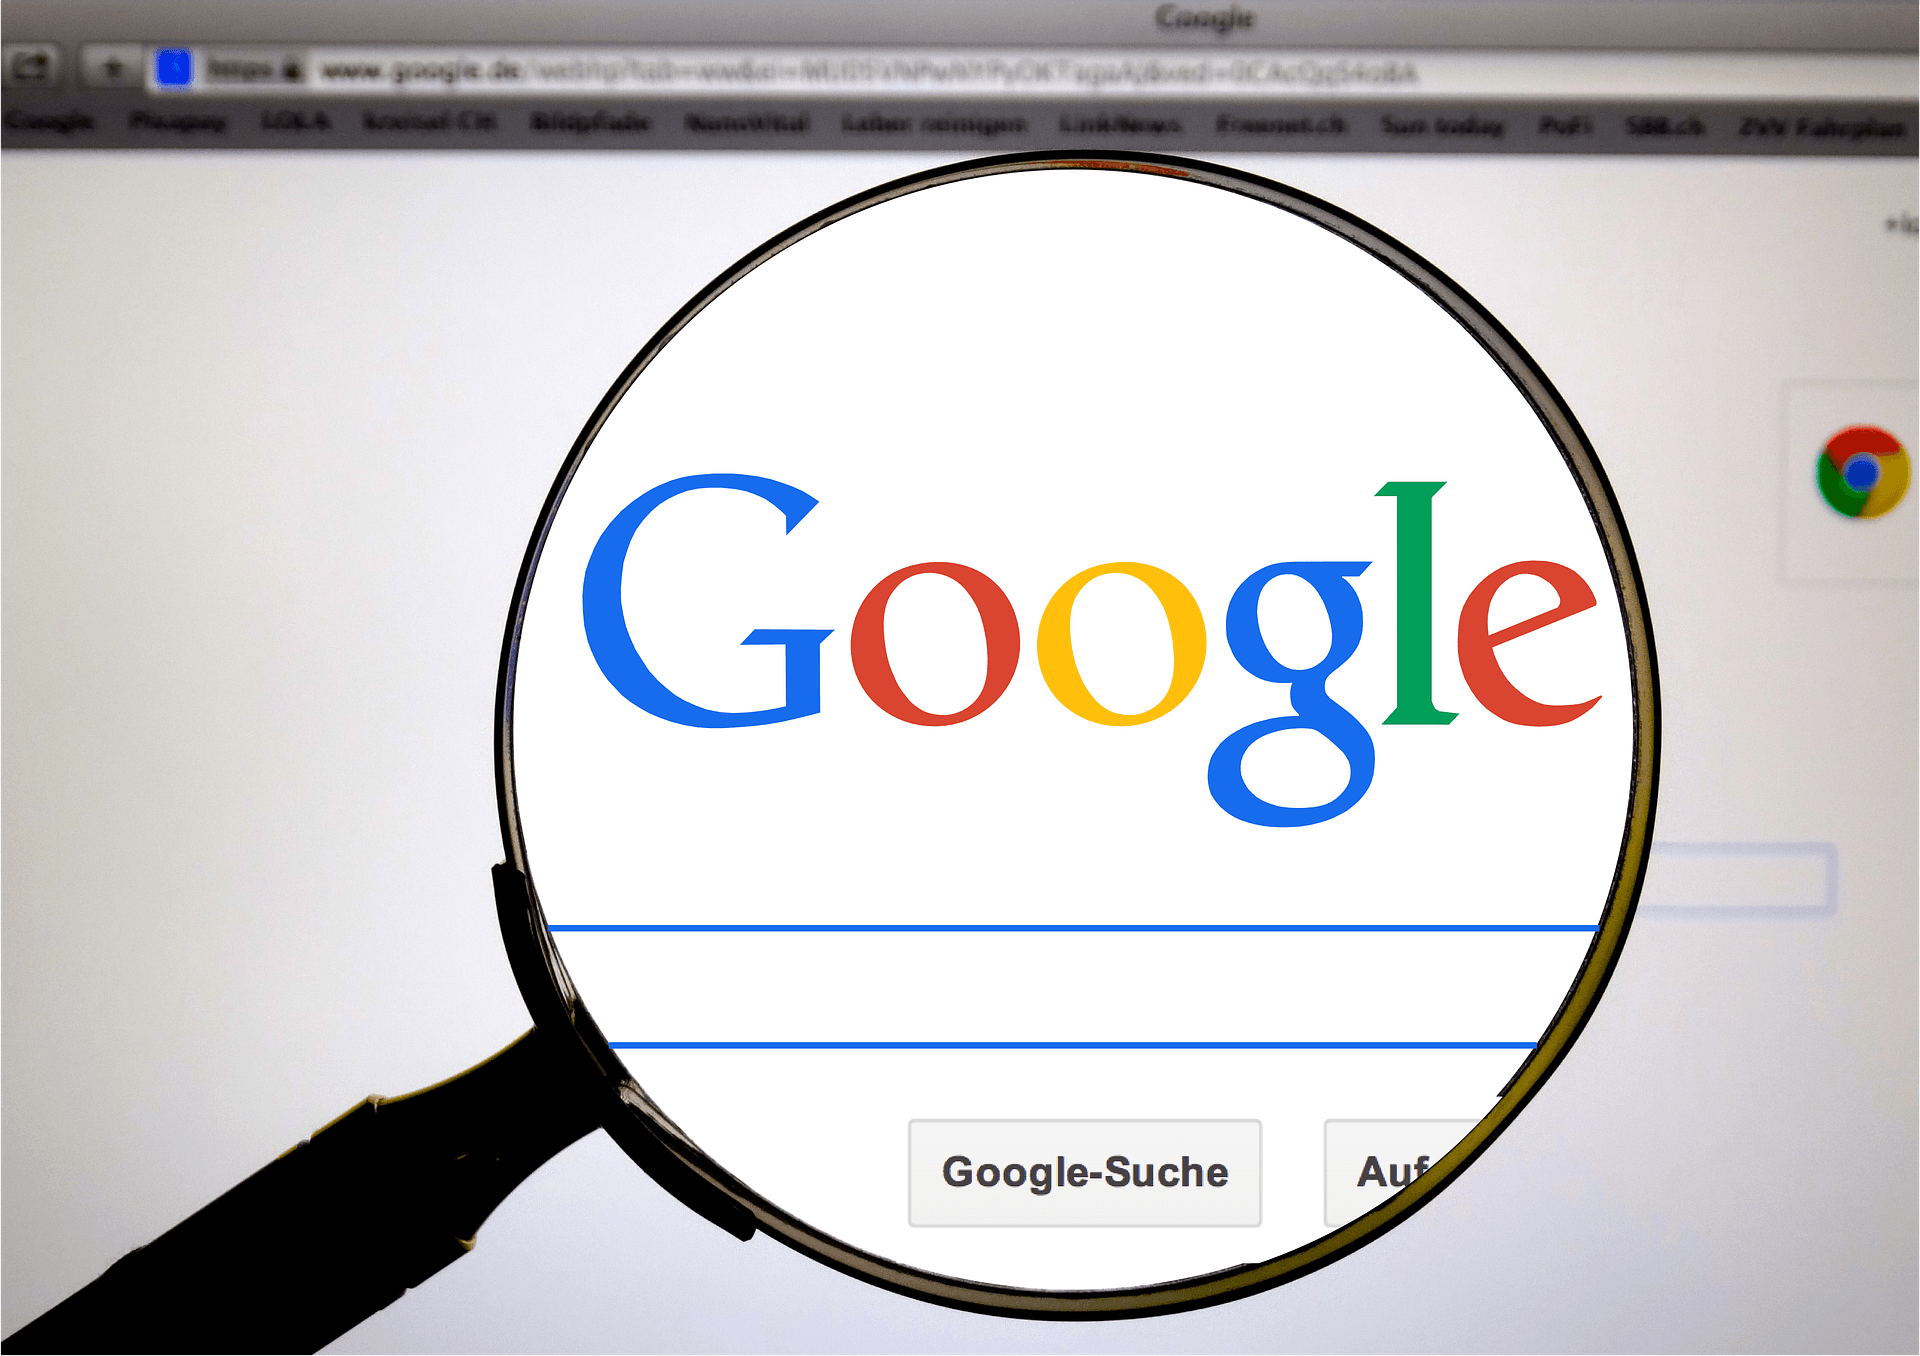 Google gibt zu, dass es falsch war - es wird mehr als 200 Millionen Euro Strafe zahlen 14